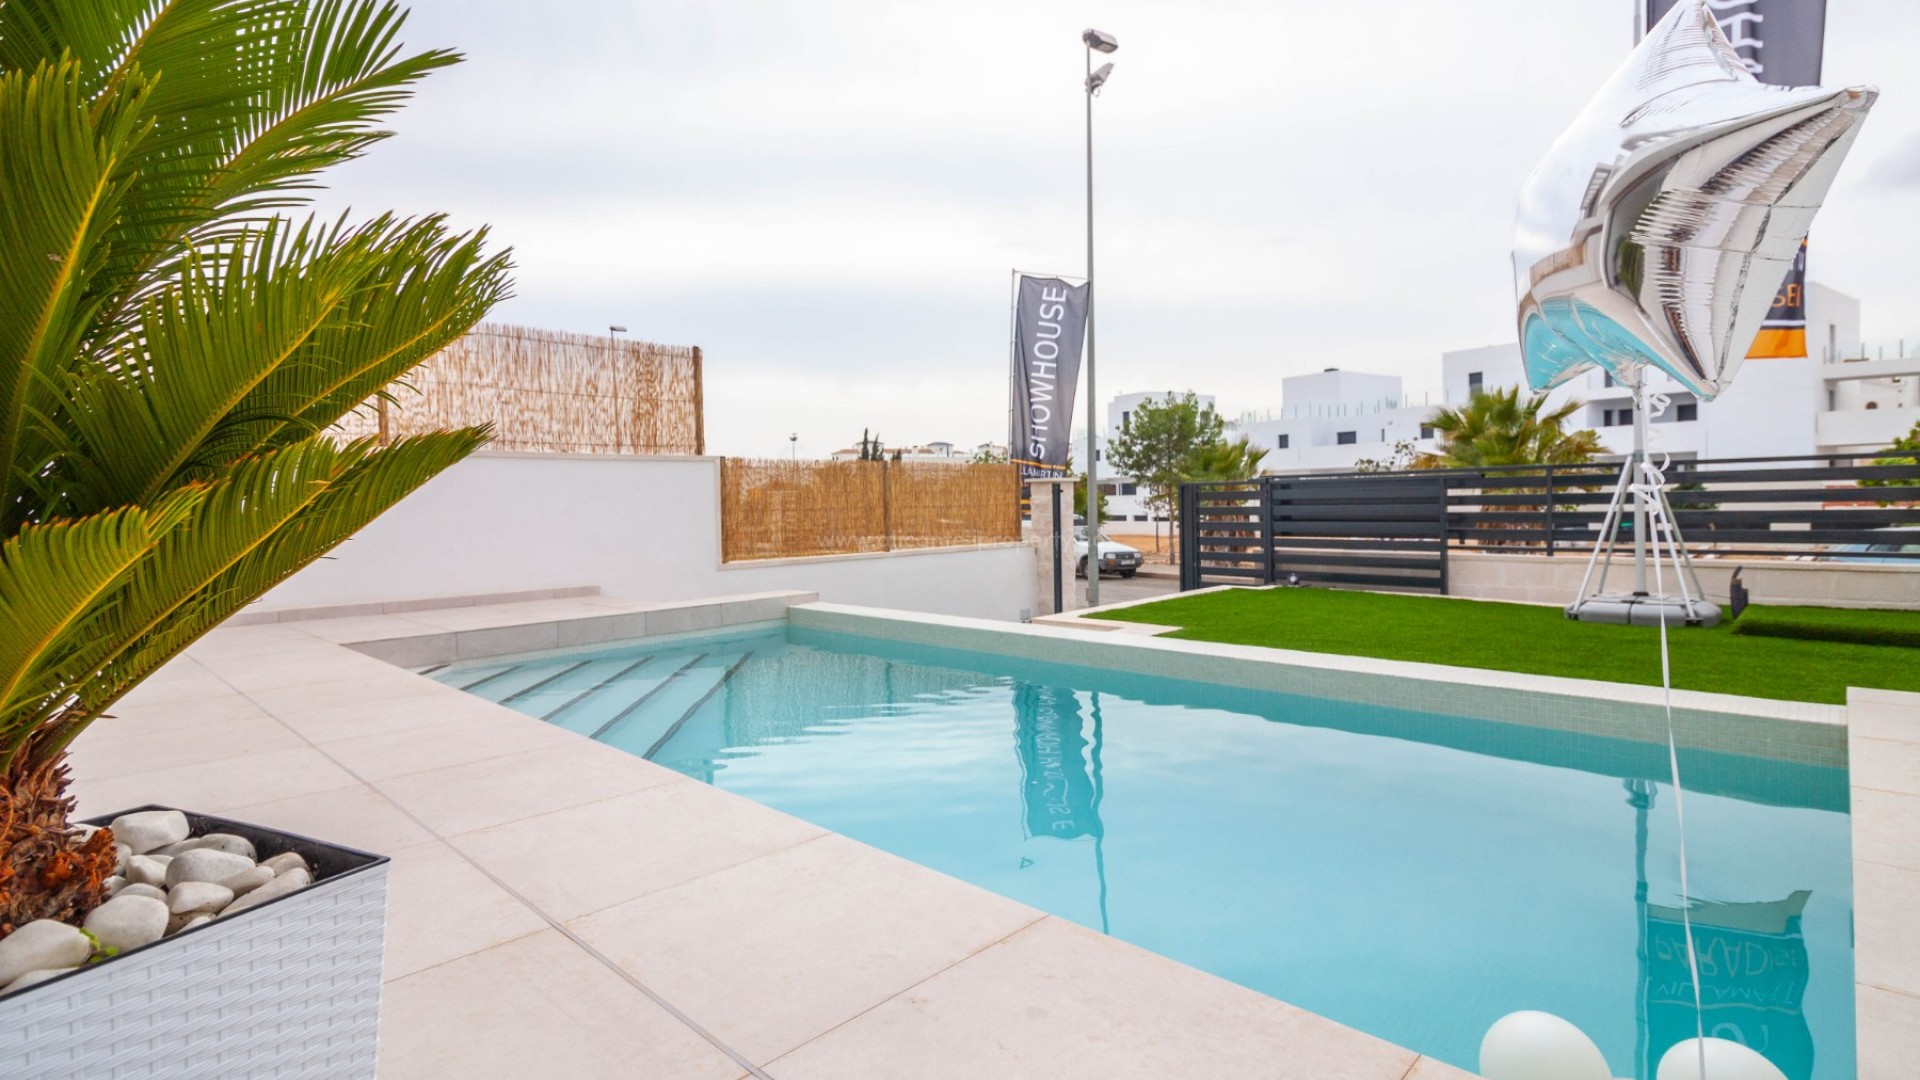 Fantstisk fine villa/hus med 3 soverom og 3 bad i Villamartin, 193 m2 basseng, solarium og hage med utsikt, 5 min til strender, 3 golfbaner i nærheten